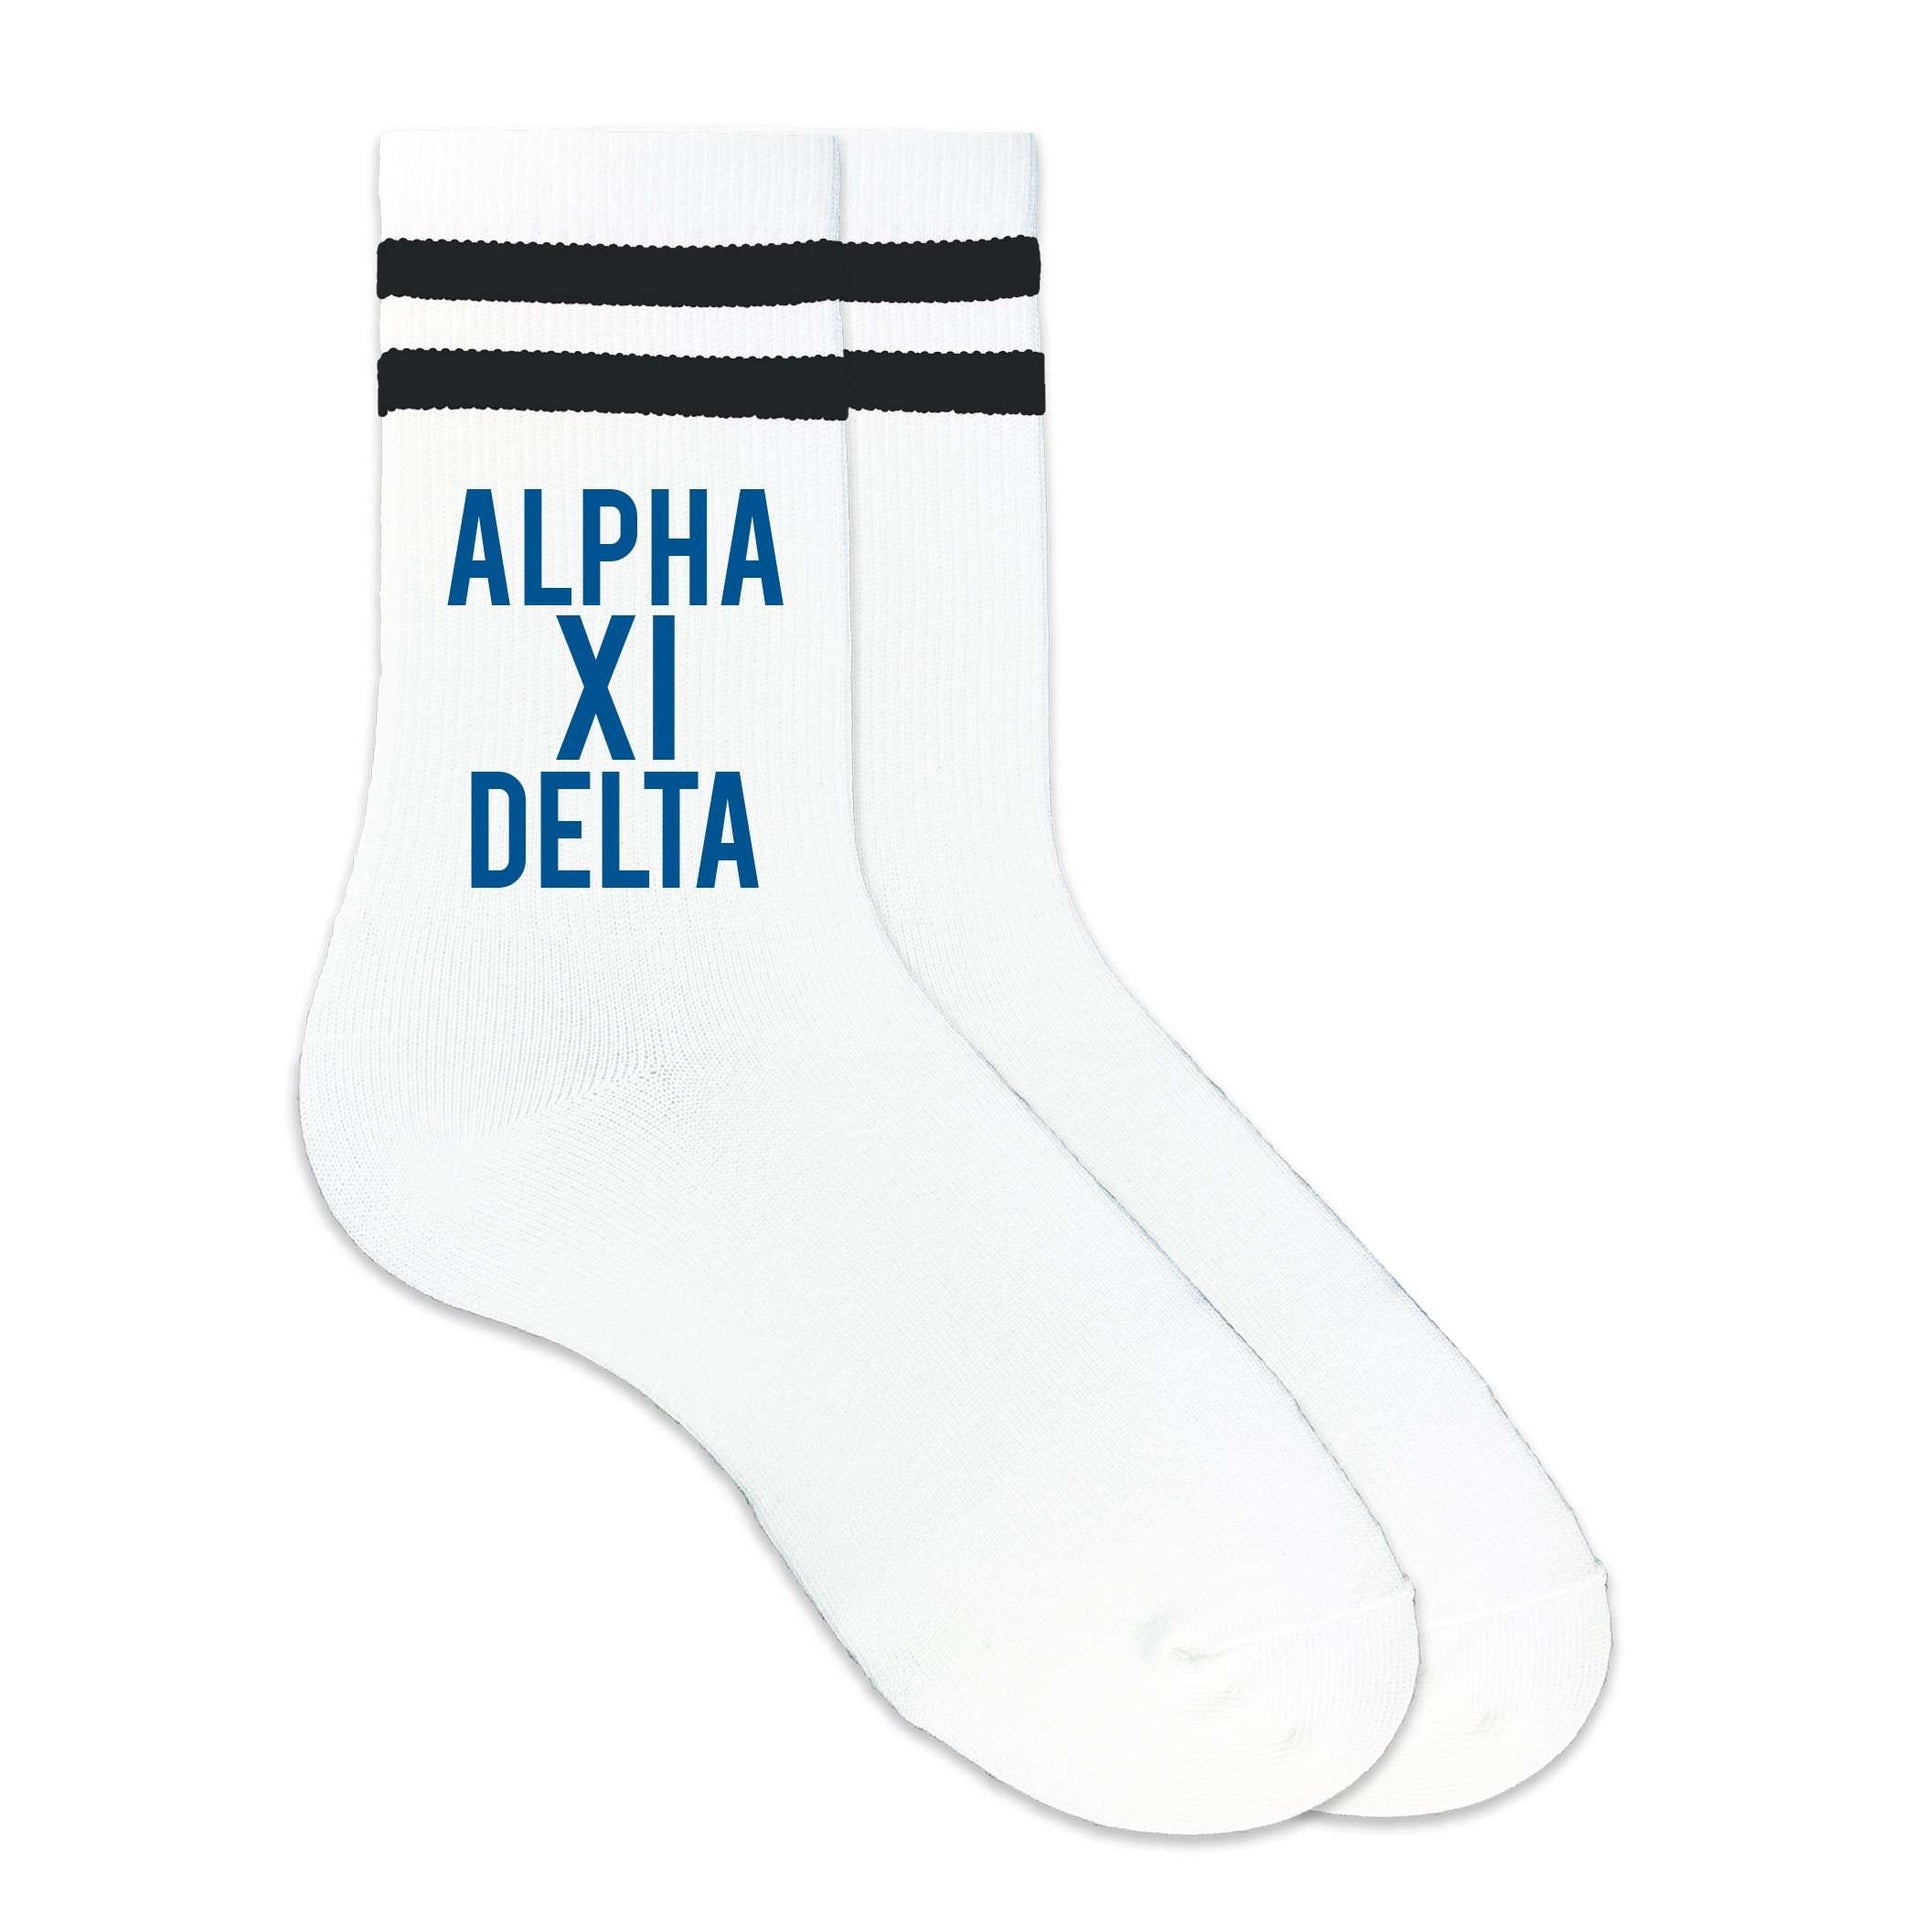 Alpha Xi Delta sorority name custom printed in sorority color on striped crew socks